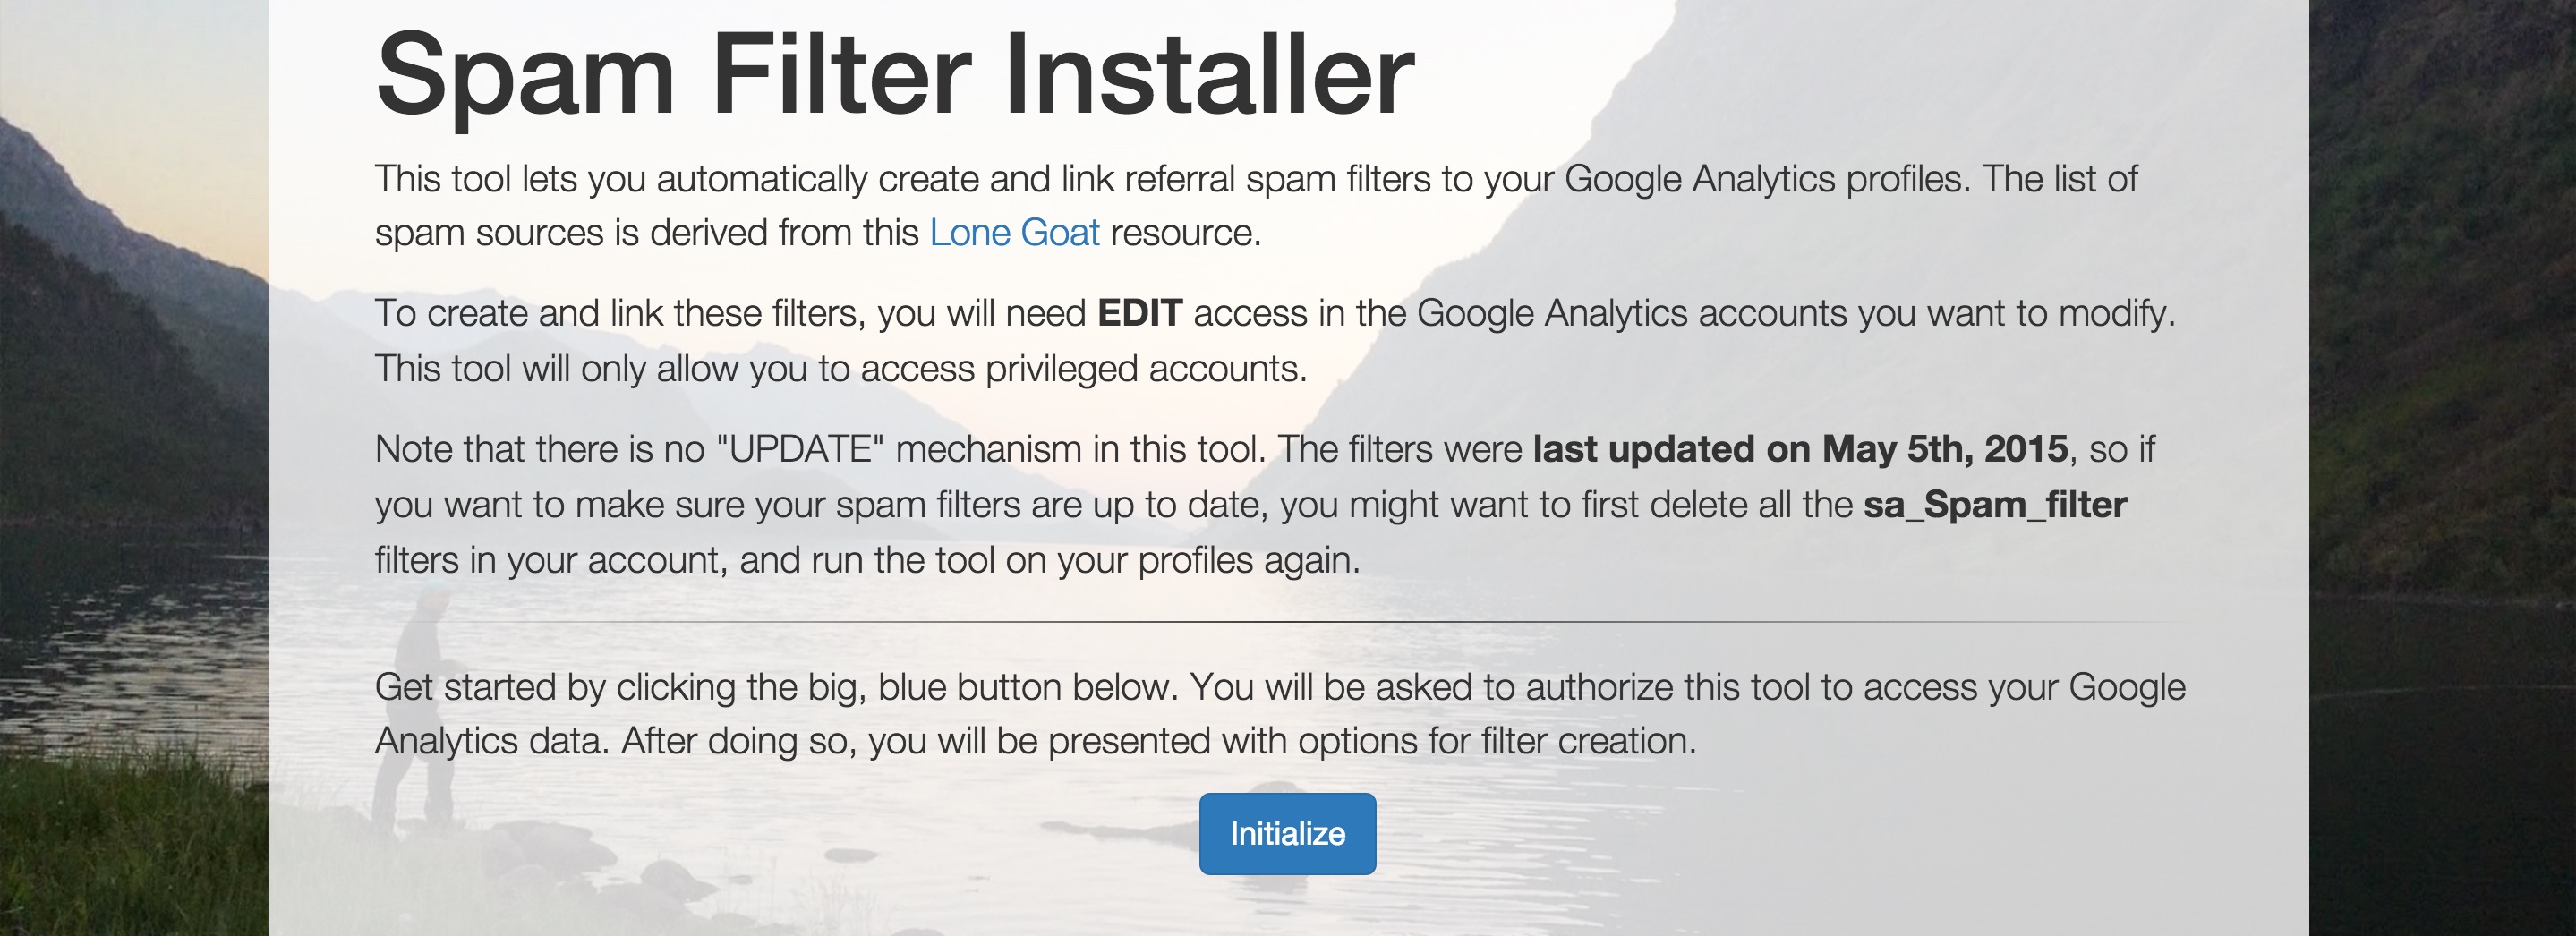 Spam Filter Installer